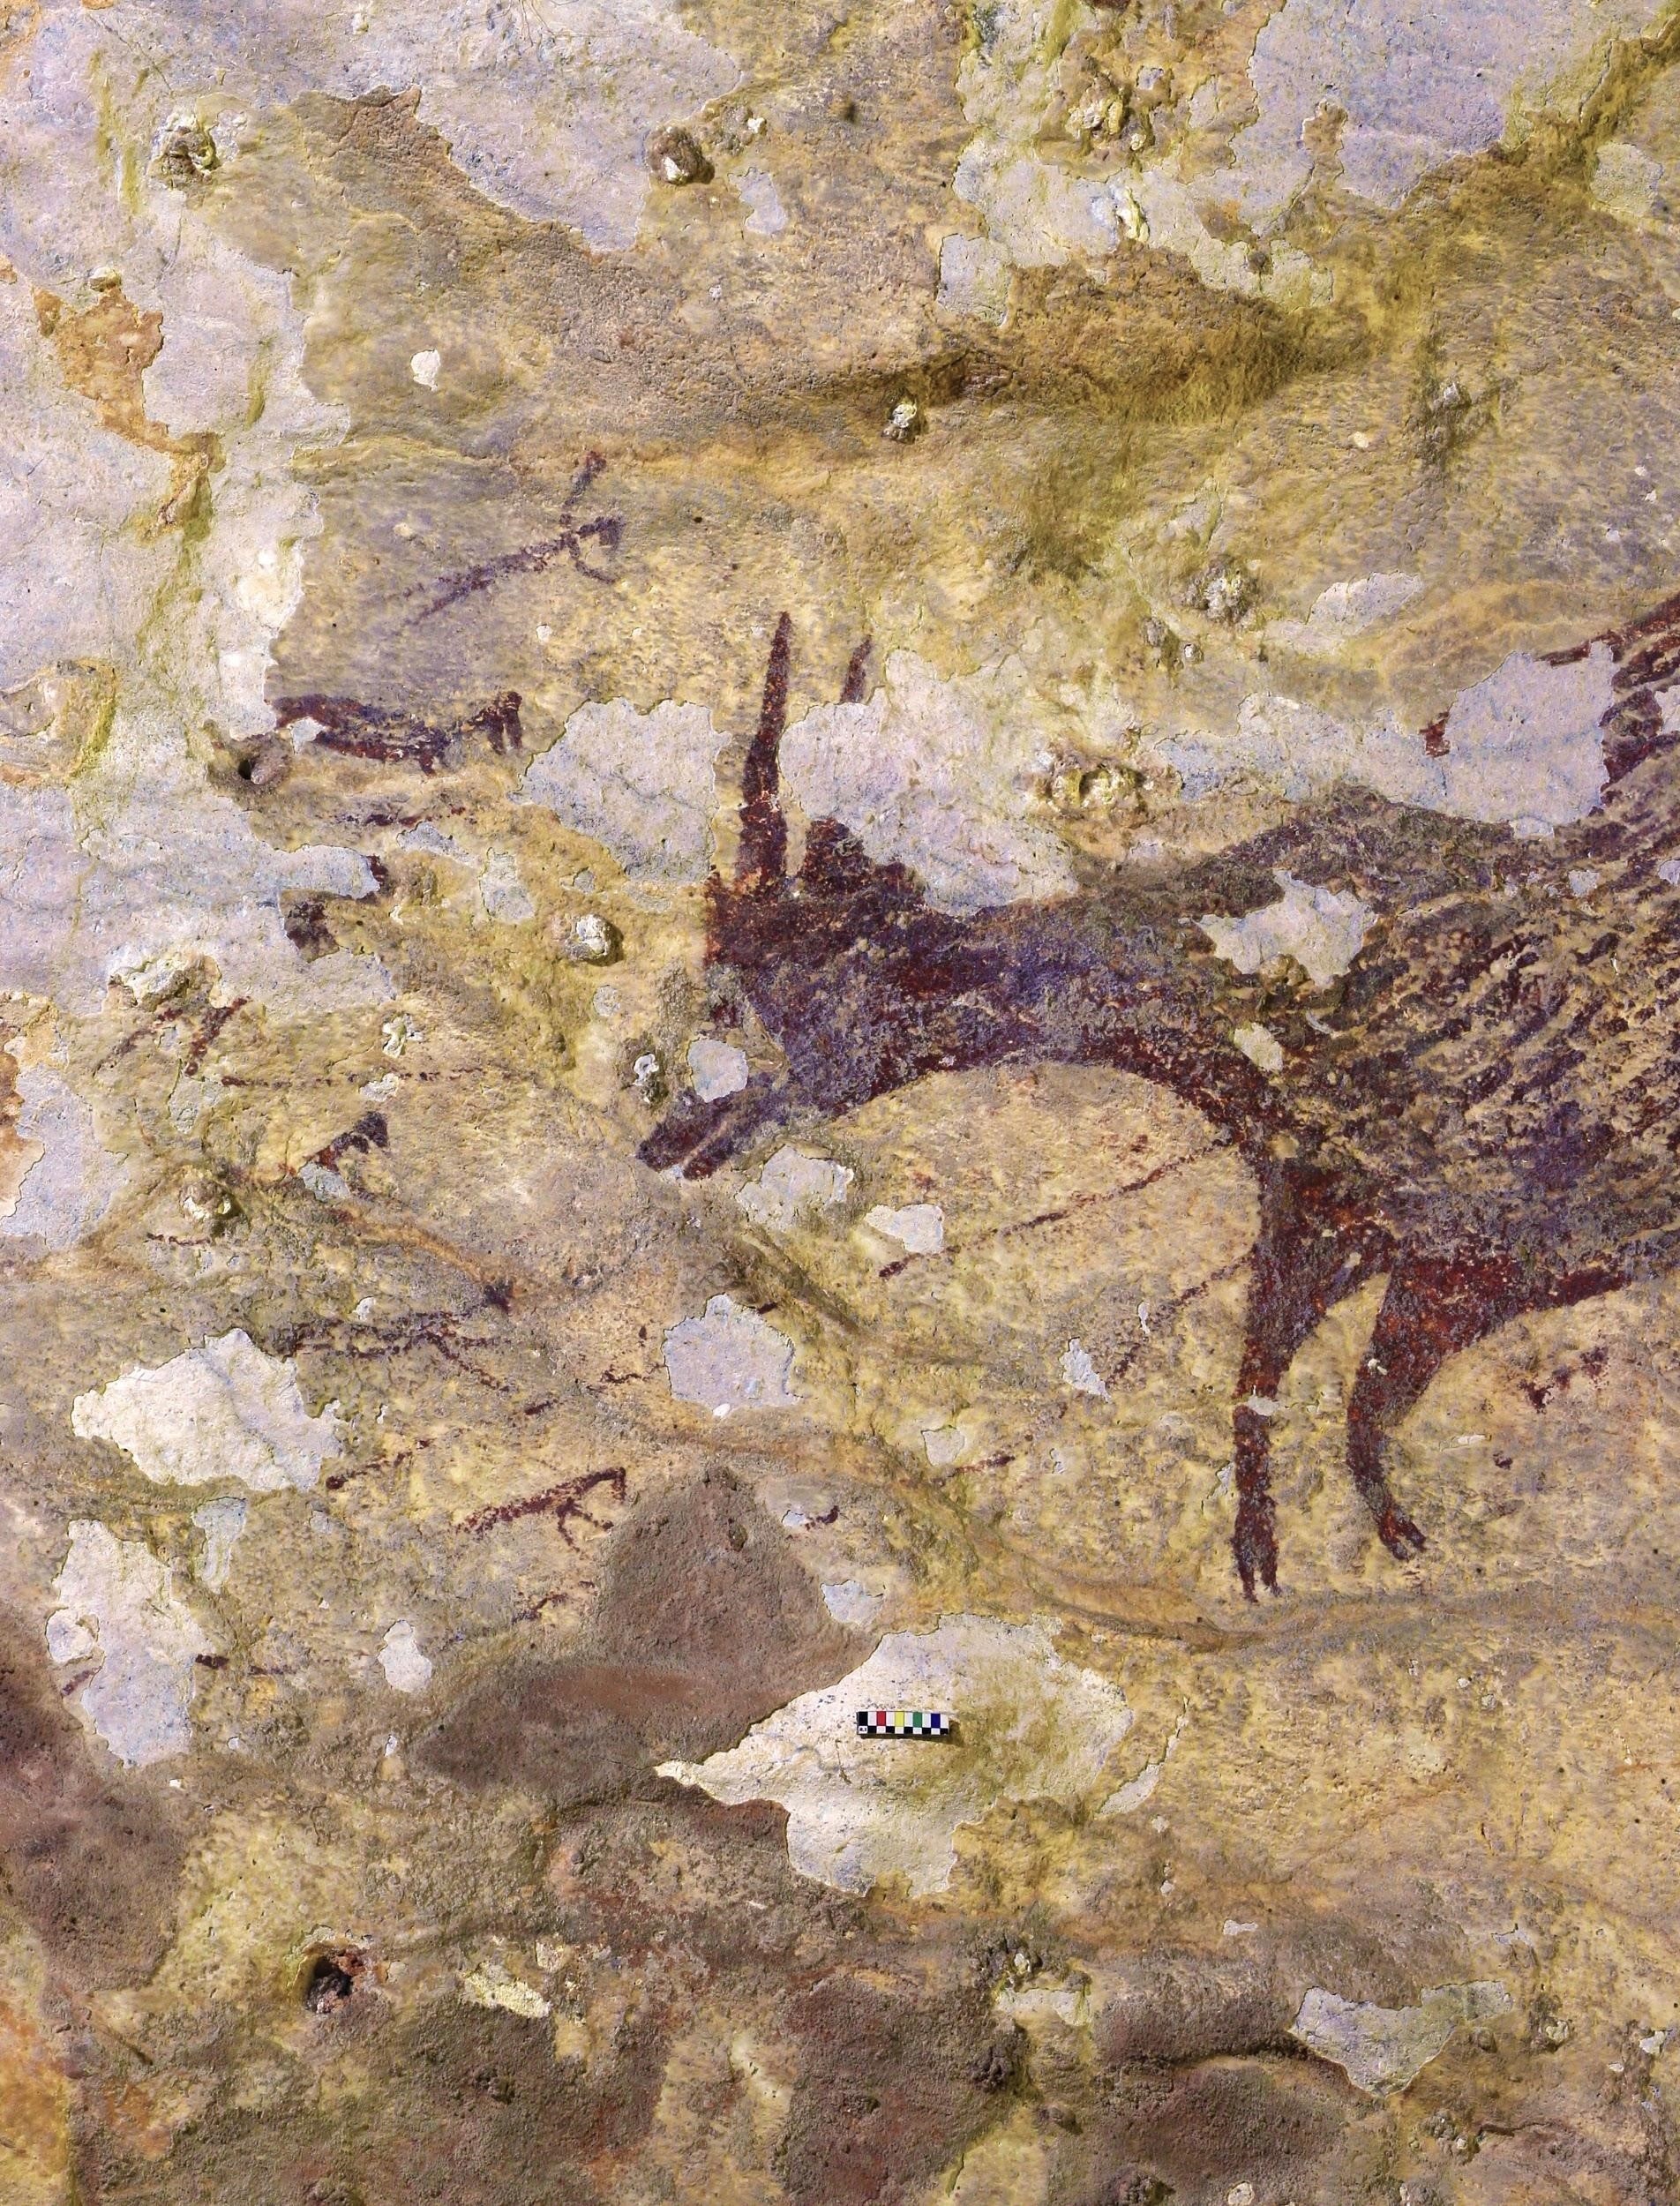 جزء من اللوحة تظهر فيها مبالغة في تصوير حجم الجاموس بينما يحاول الصيادون اصطيادها (مواقع التواصل)